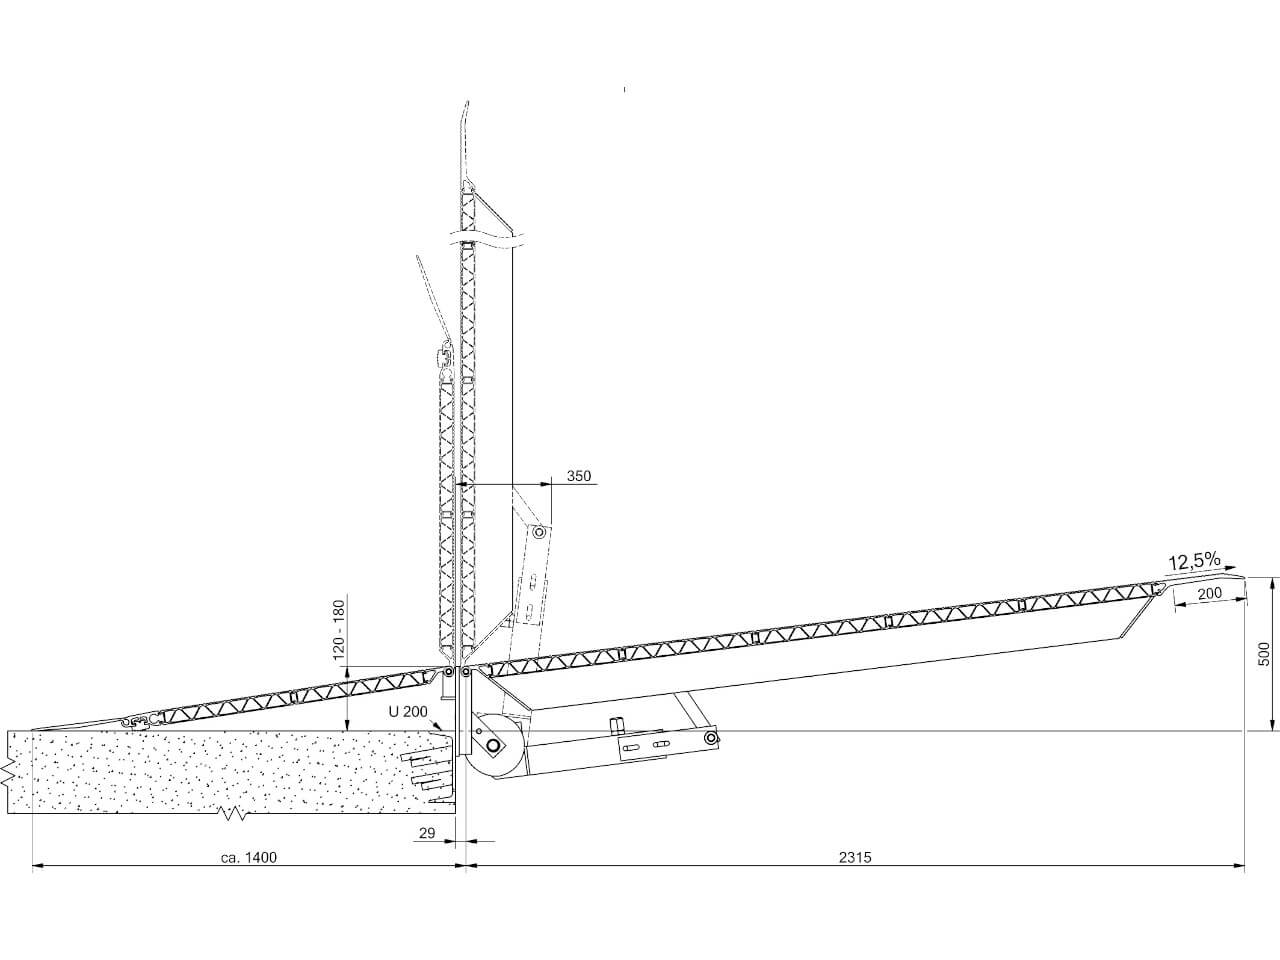 technische zeichnung einer stationaeren fbts ueberladebruecke von altec